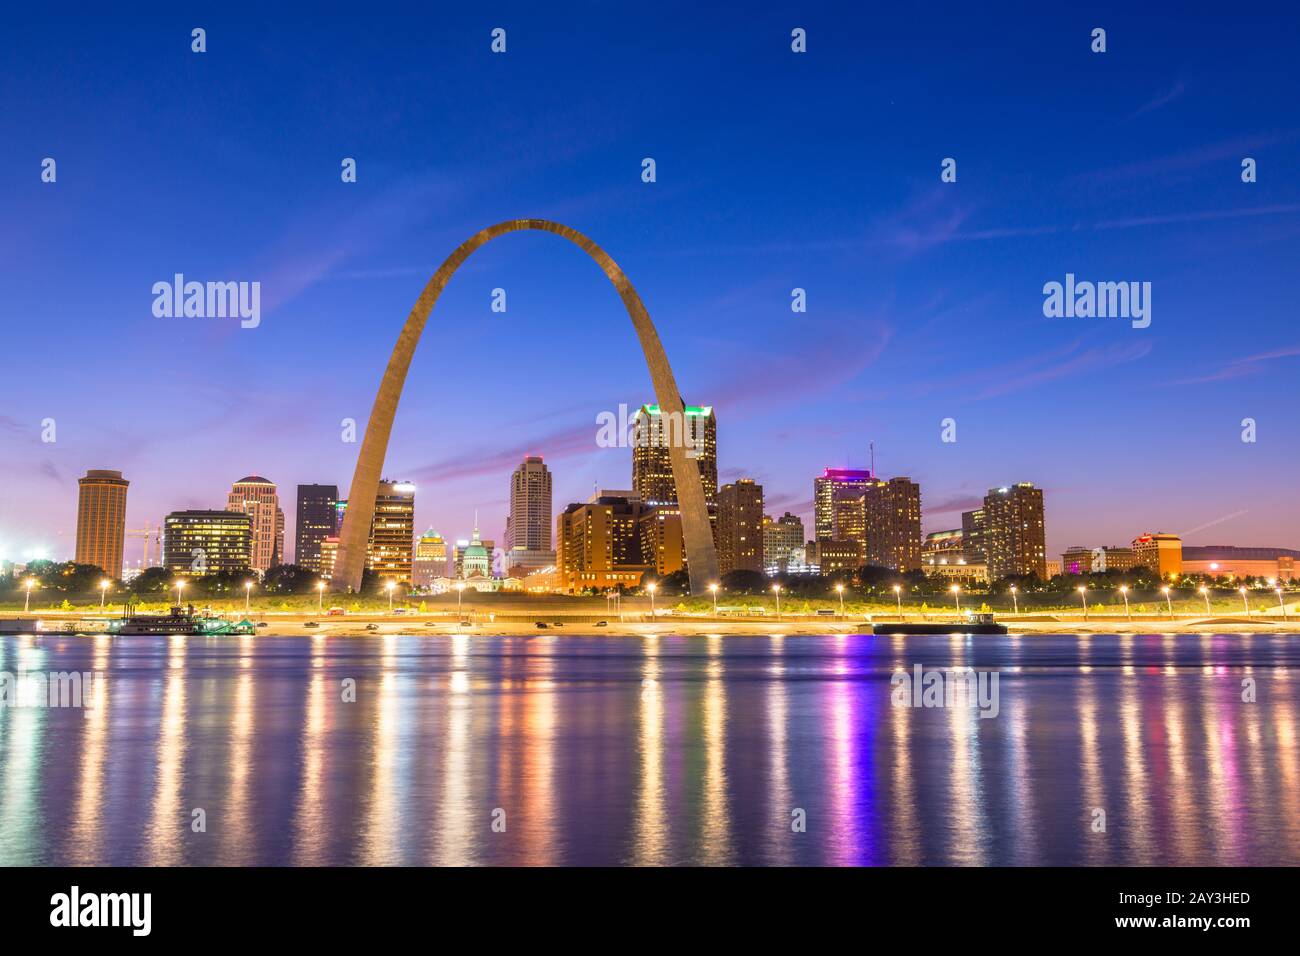 Louis, Missouri, EE.UU. el centro de ciudad a orillas del Río Mississippi en penumbra. Foto de stock